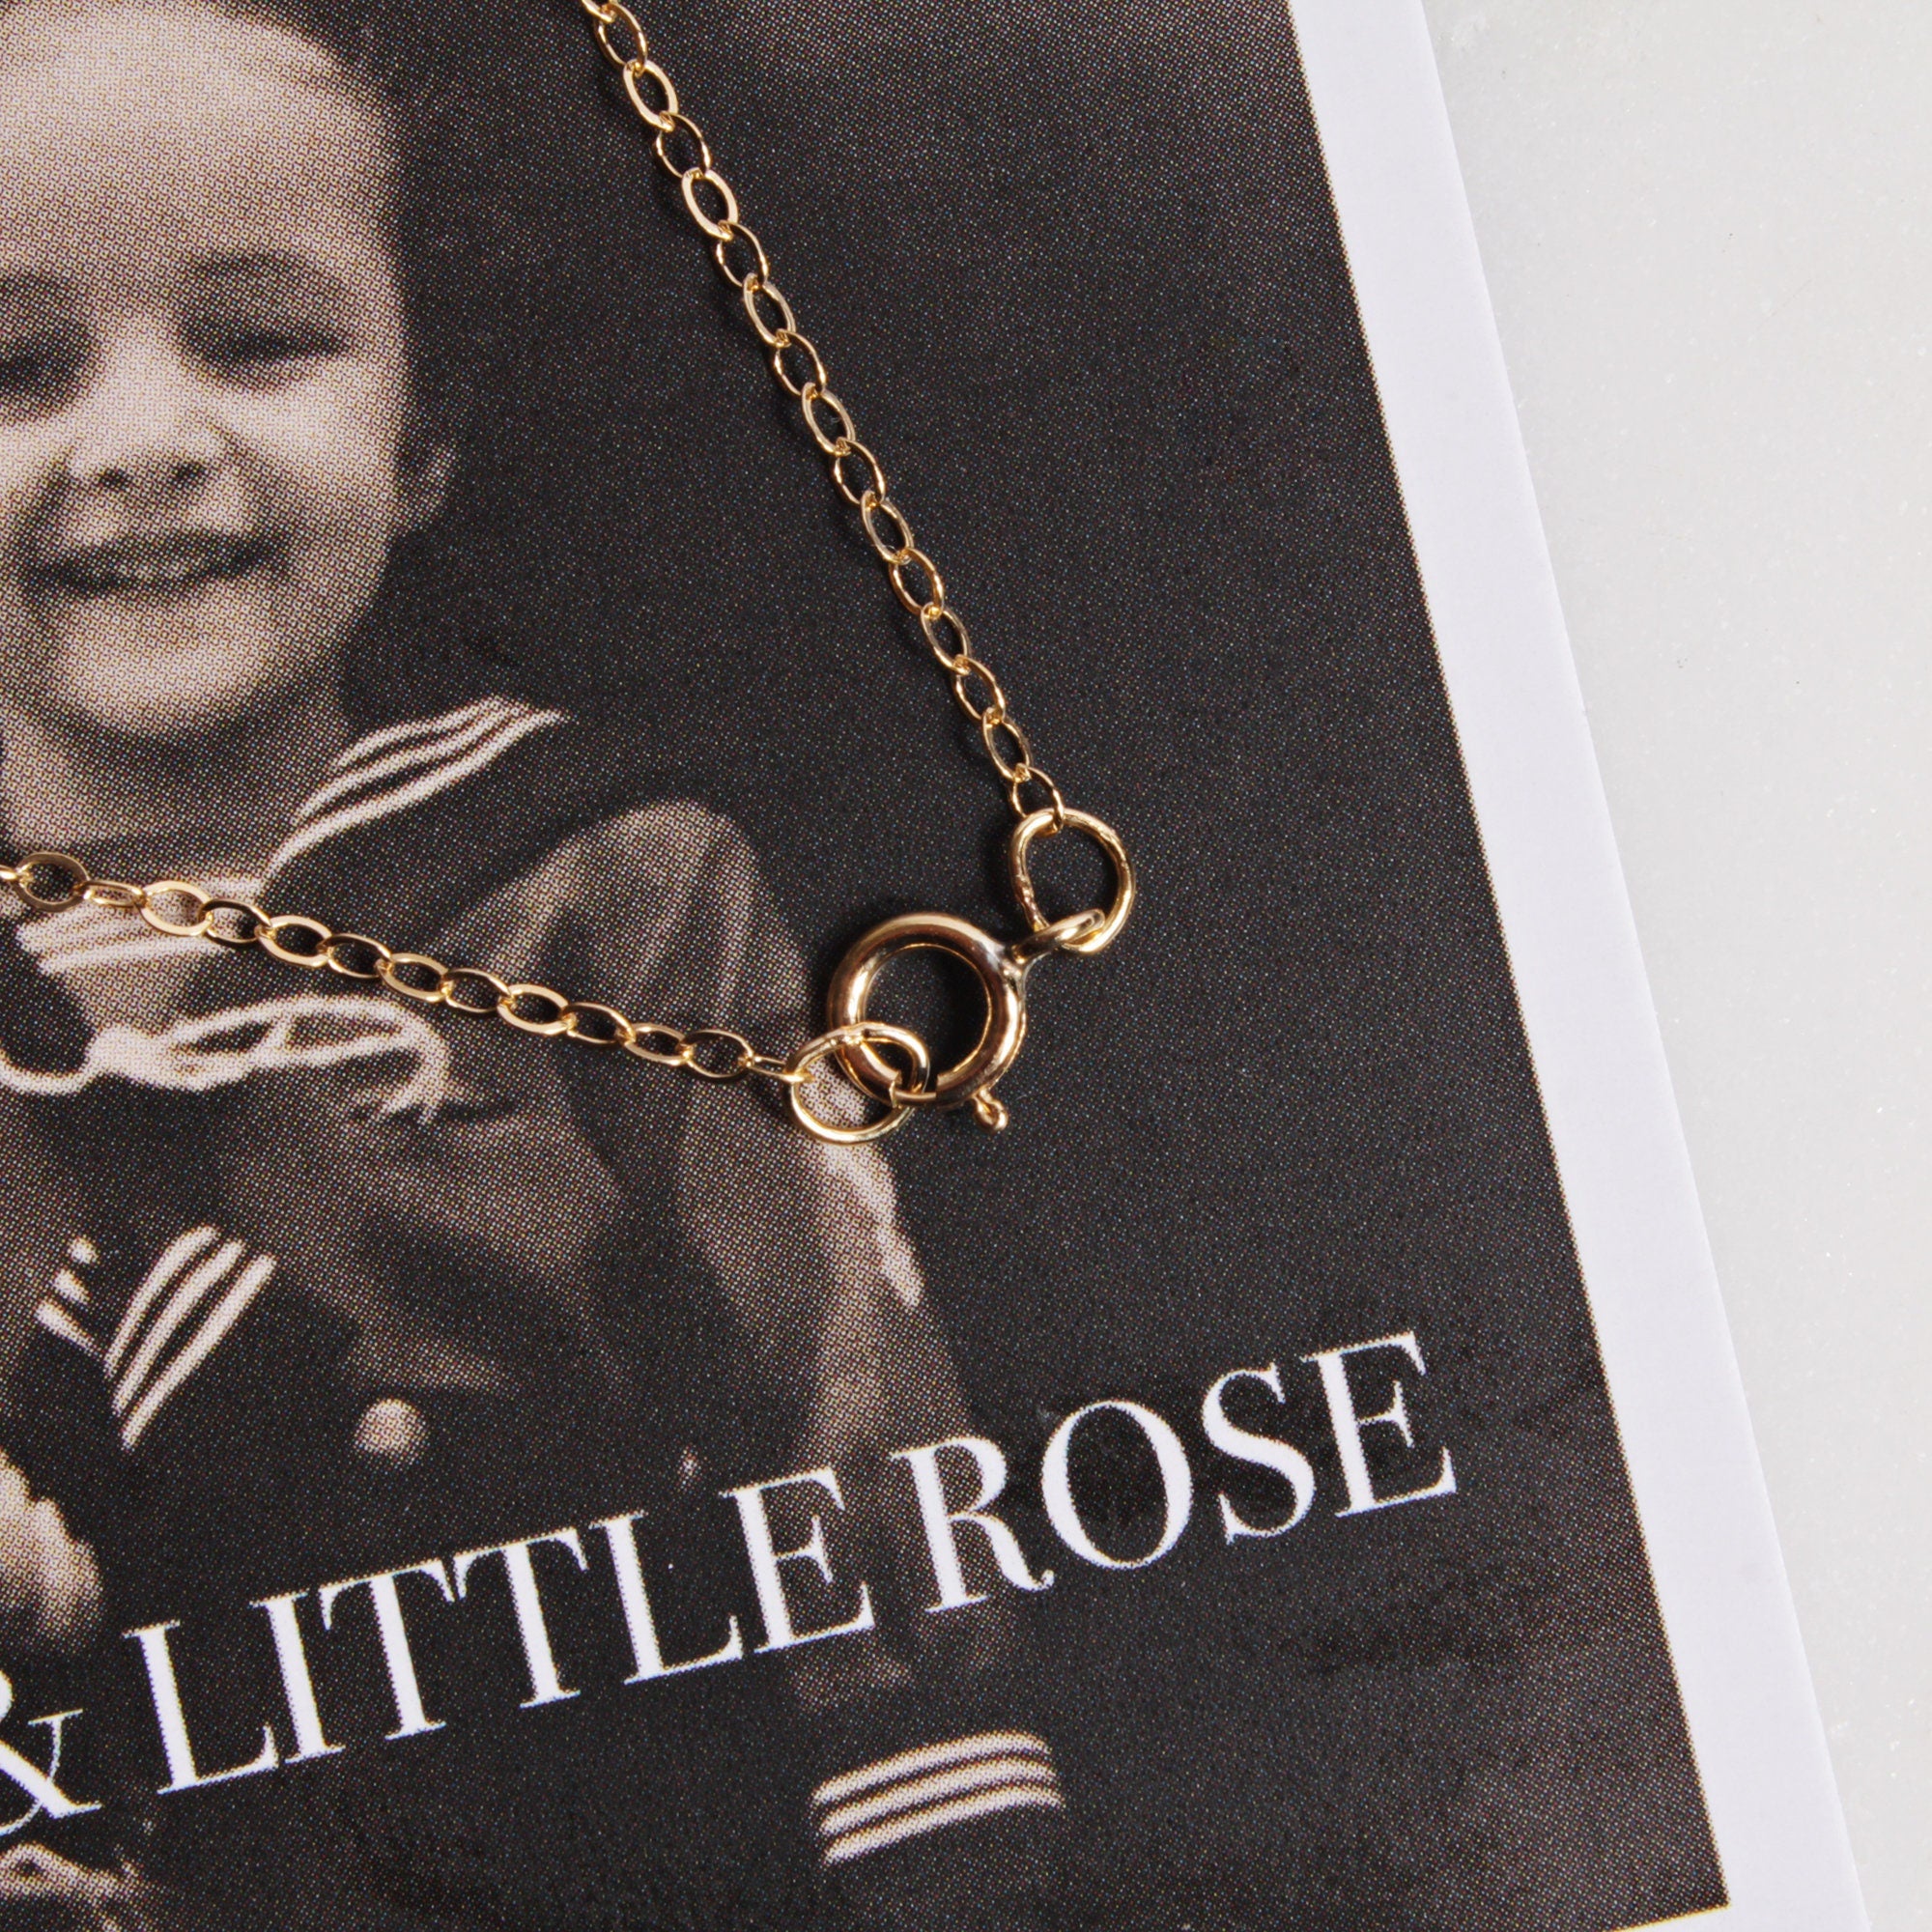 Labradorite Raw Pebble Pendant Gold Necklace Necklaces Soul & Little Rose   